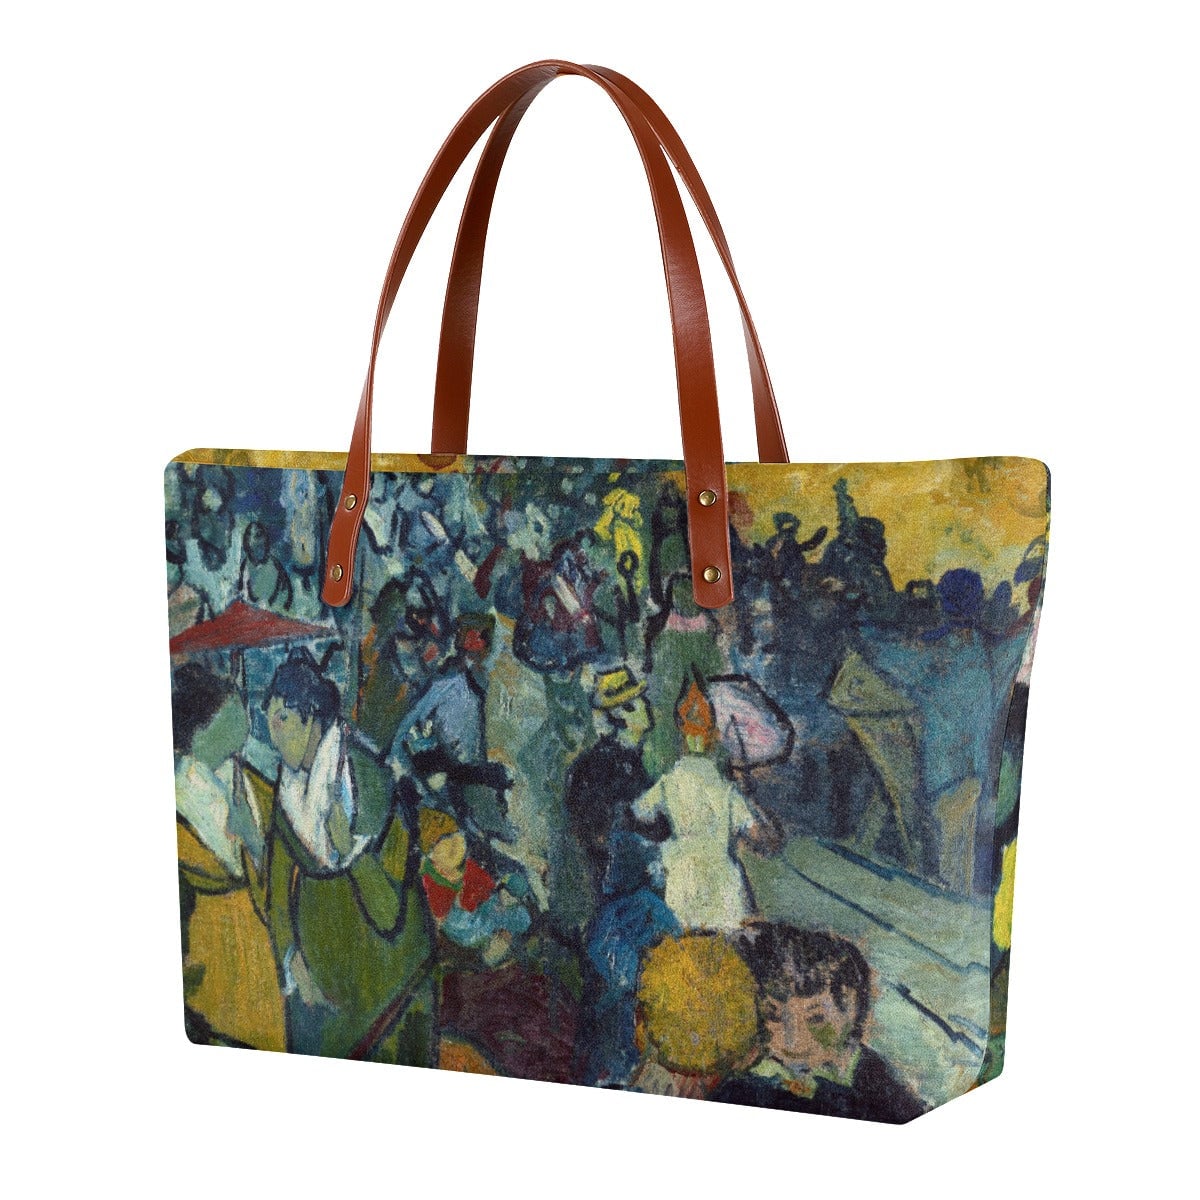 Vincent van Gogh’s Les Arenes Tote Bag